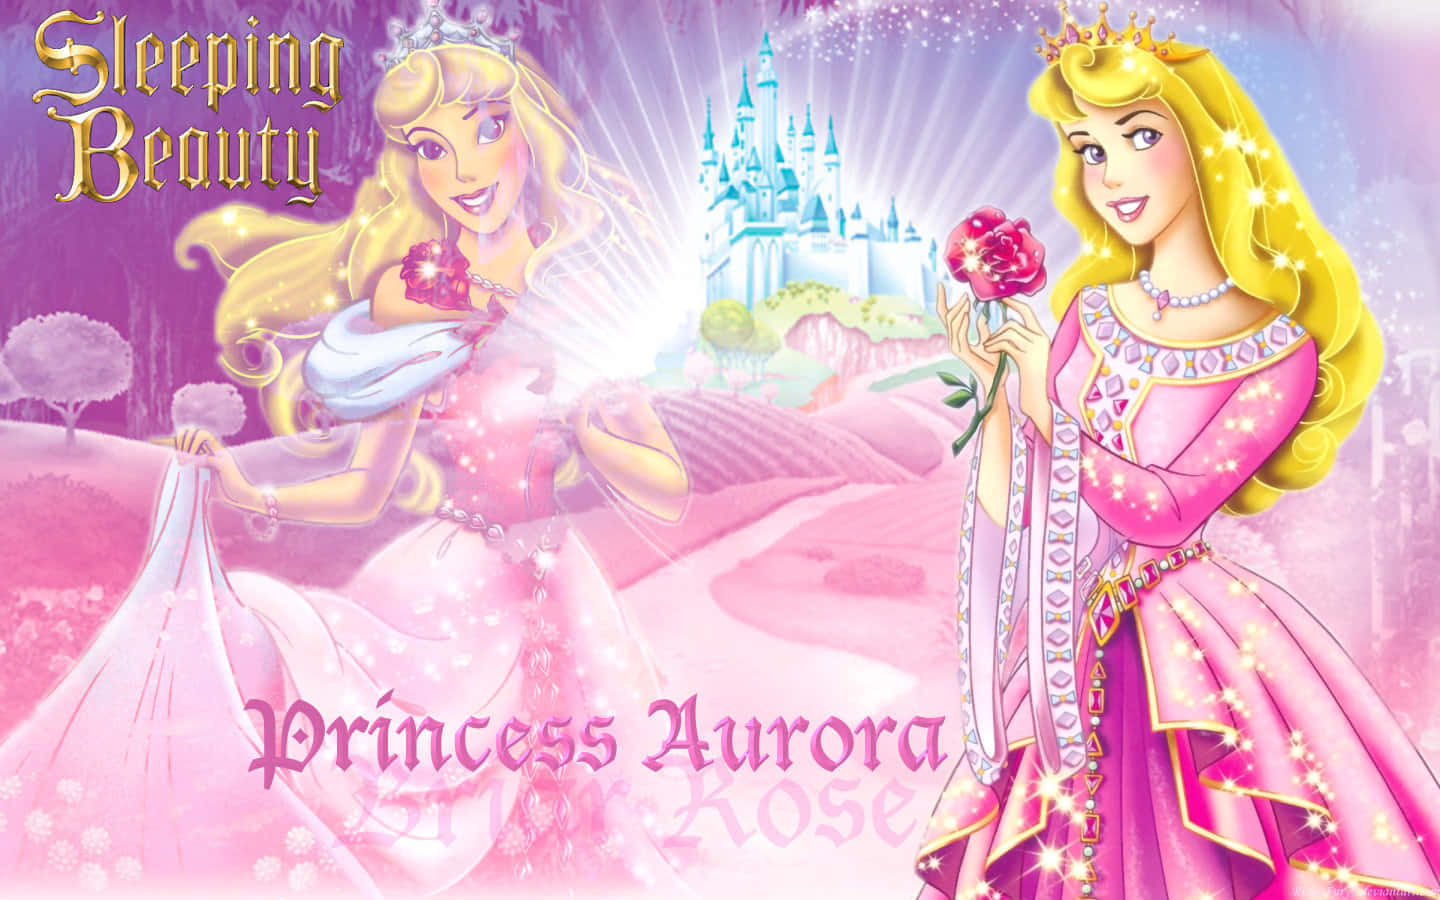 Viergeliebte Disney-prinzessinnen - Jasmin, Rapunzel, Cinderella Und Belle.